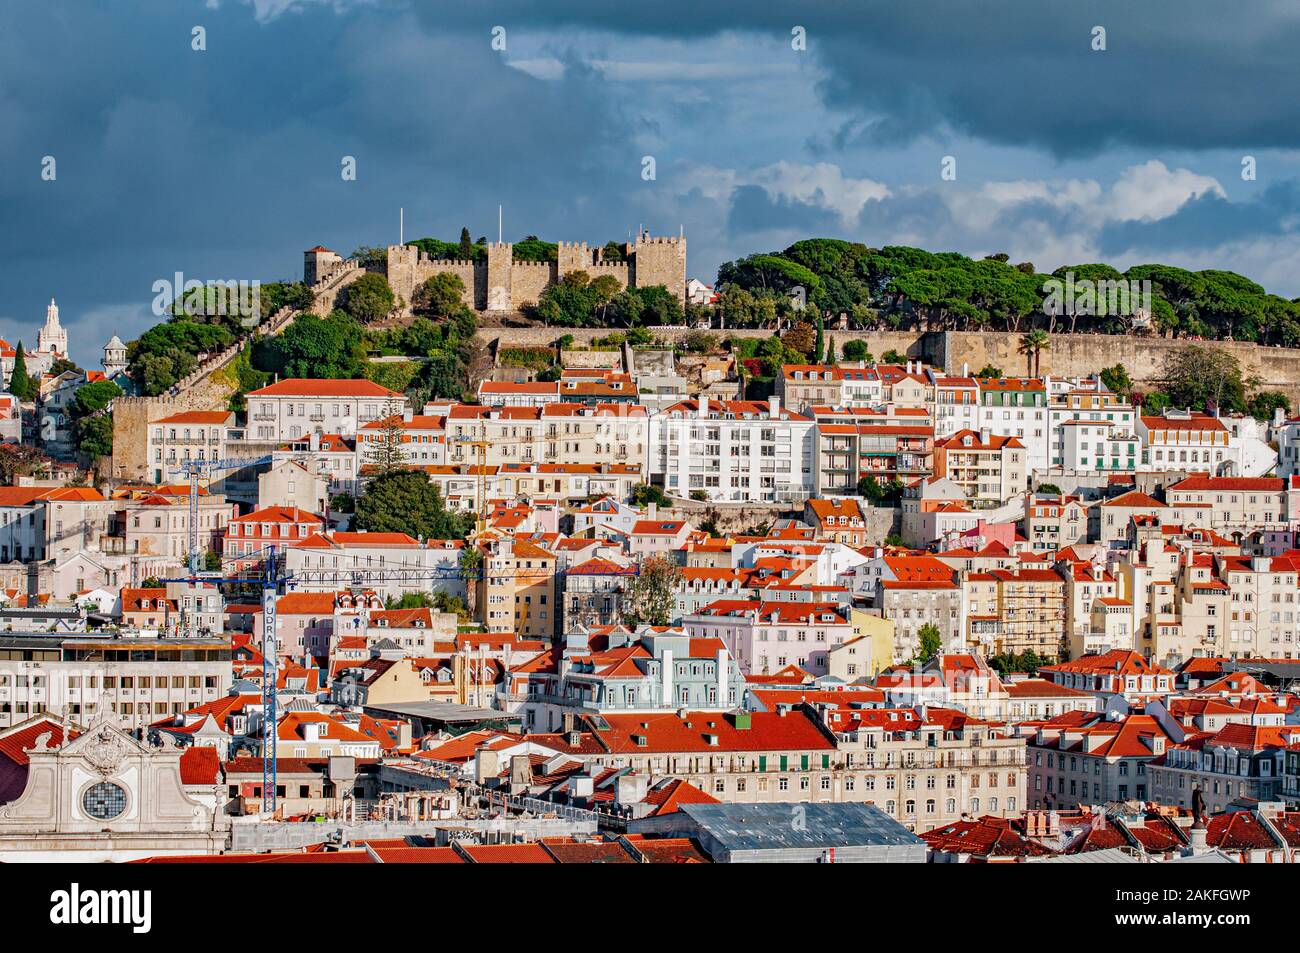 View from the Miradouro de Sao Pedro de Alcantara in the Bairro Alto, Lisbon, Portugal Stock Photo